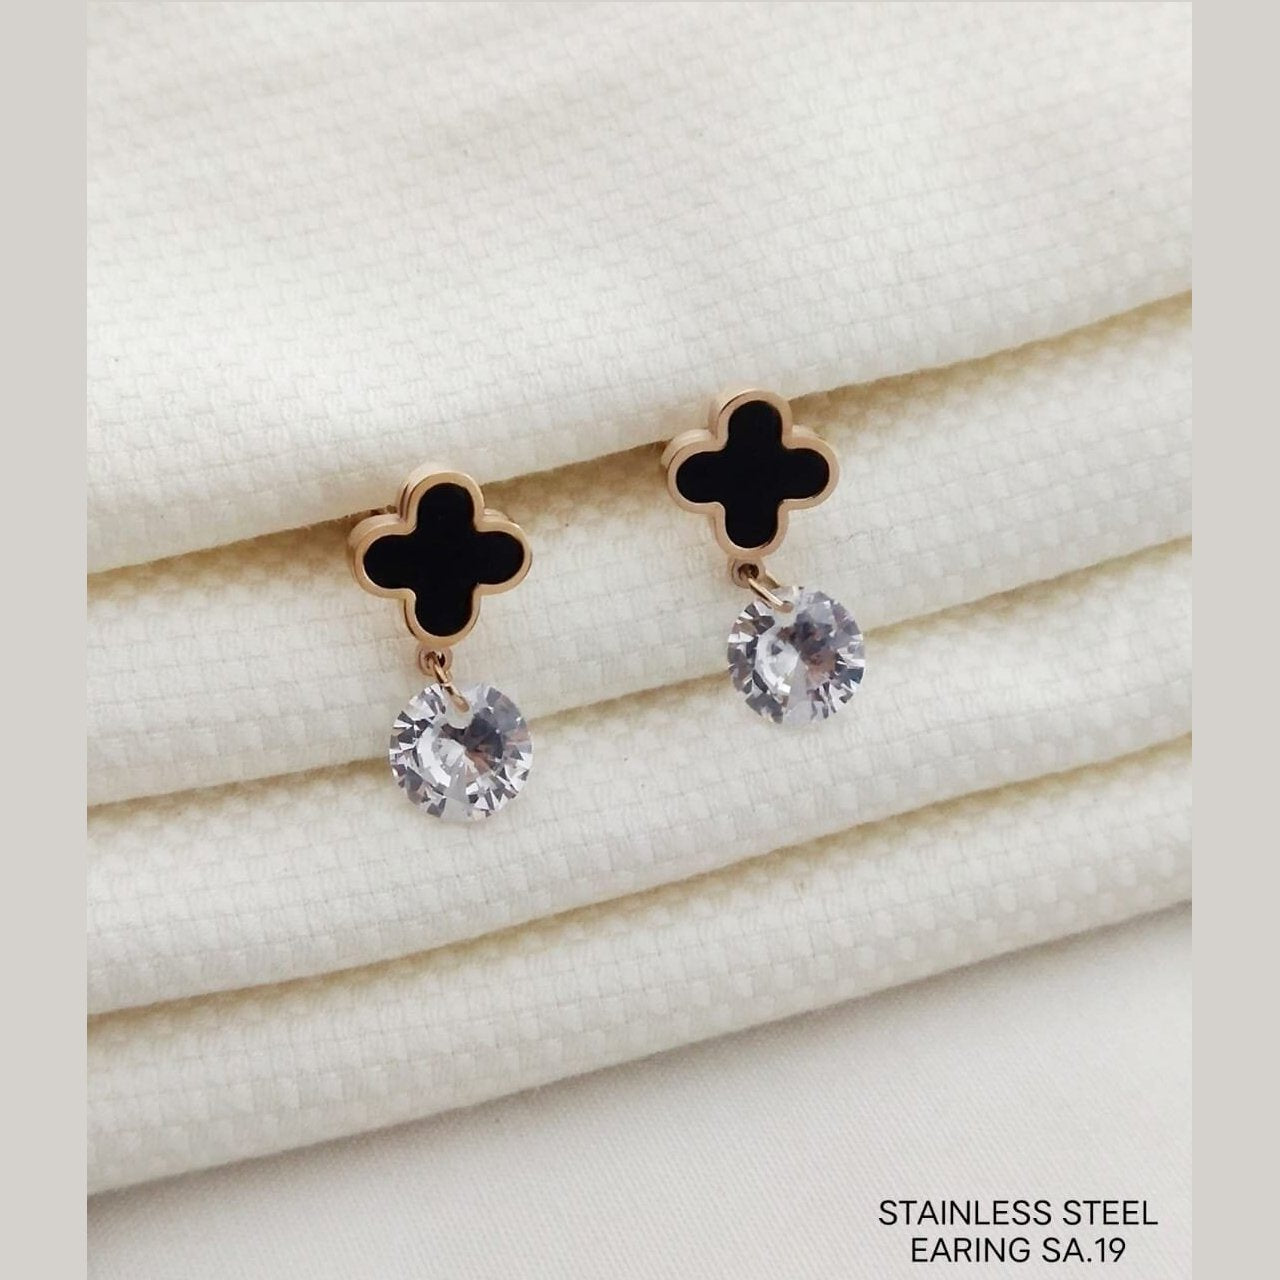 Flower Rose Gold Black American Diamond Stainless Steel Stud Earring Pair For Women